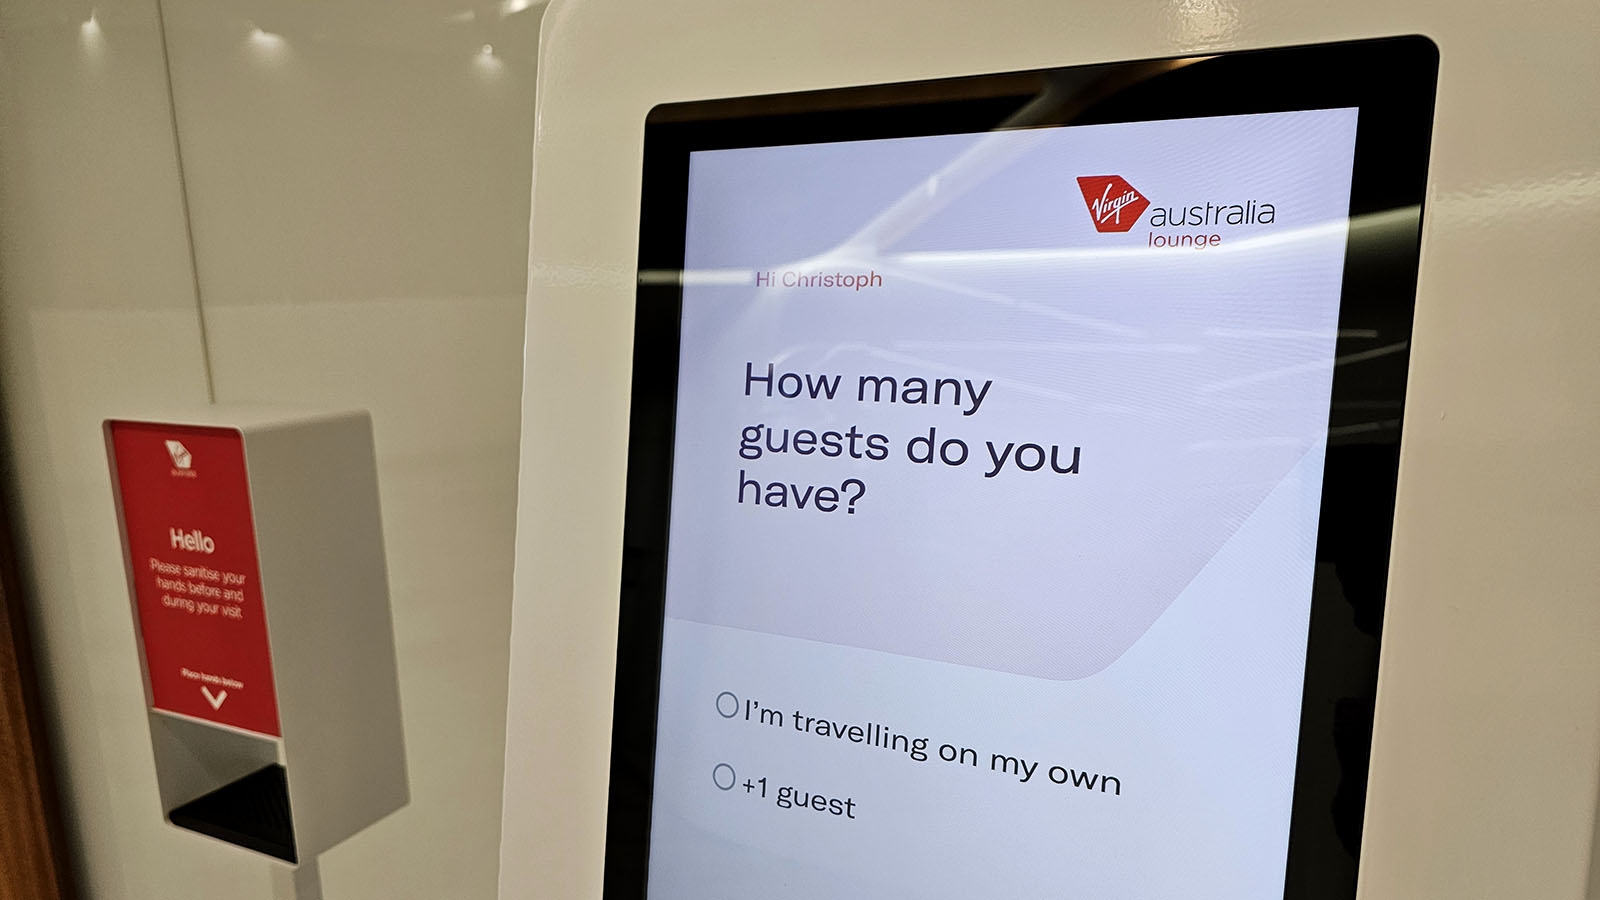 Entry kiosk for the Virgin Australia Lounge in Canberra